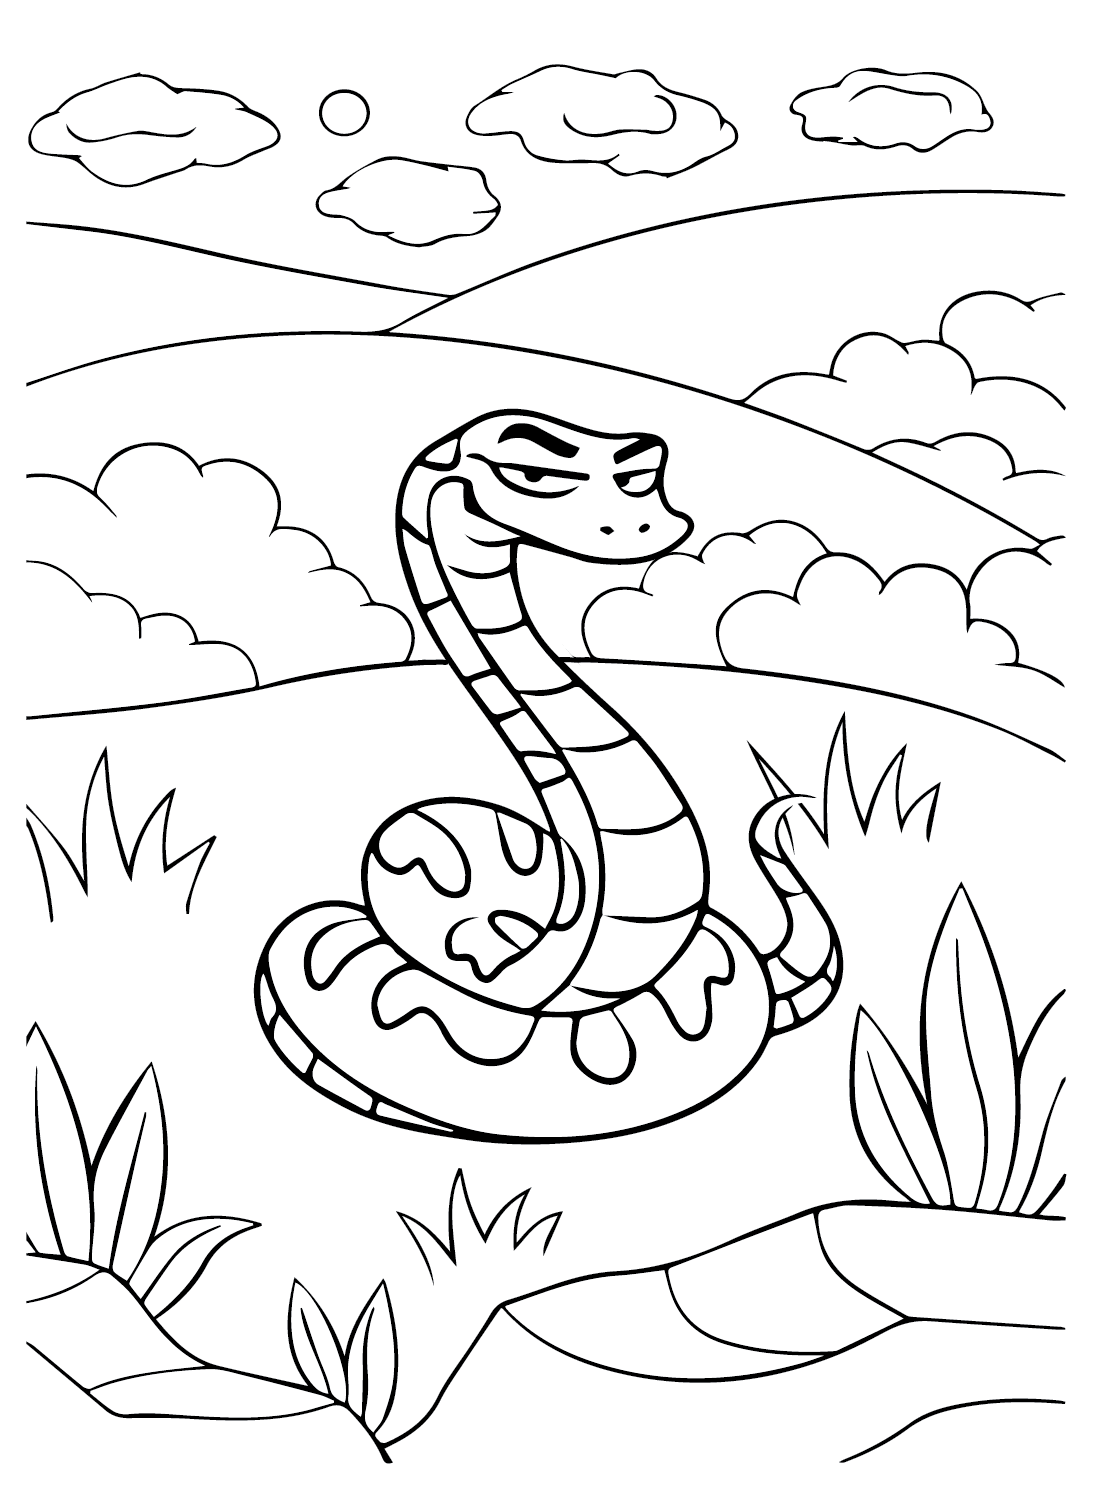 Anaconda Cartoon Coloring Page from Anaconda